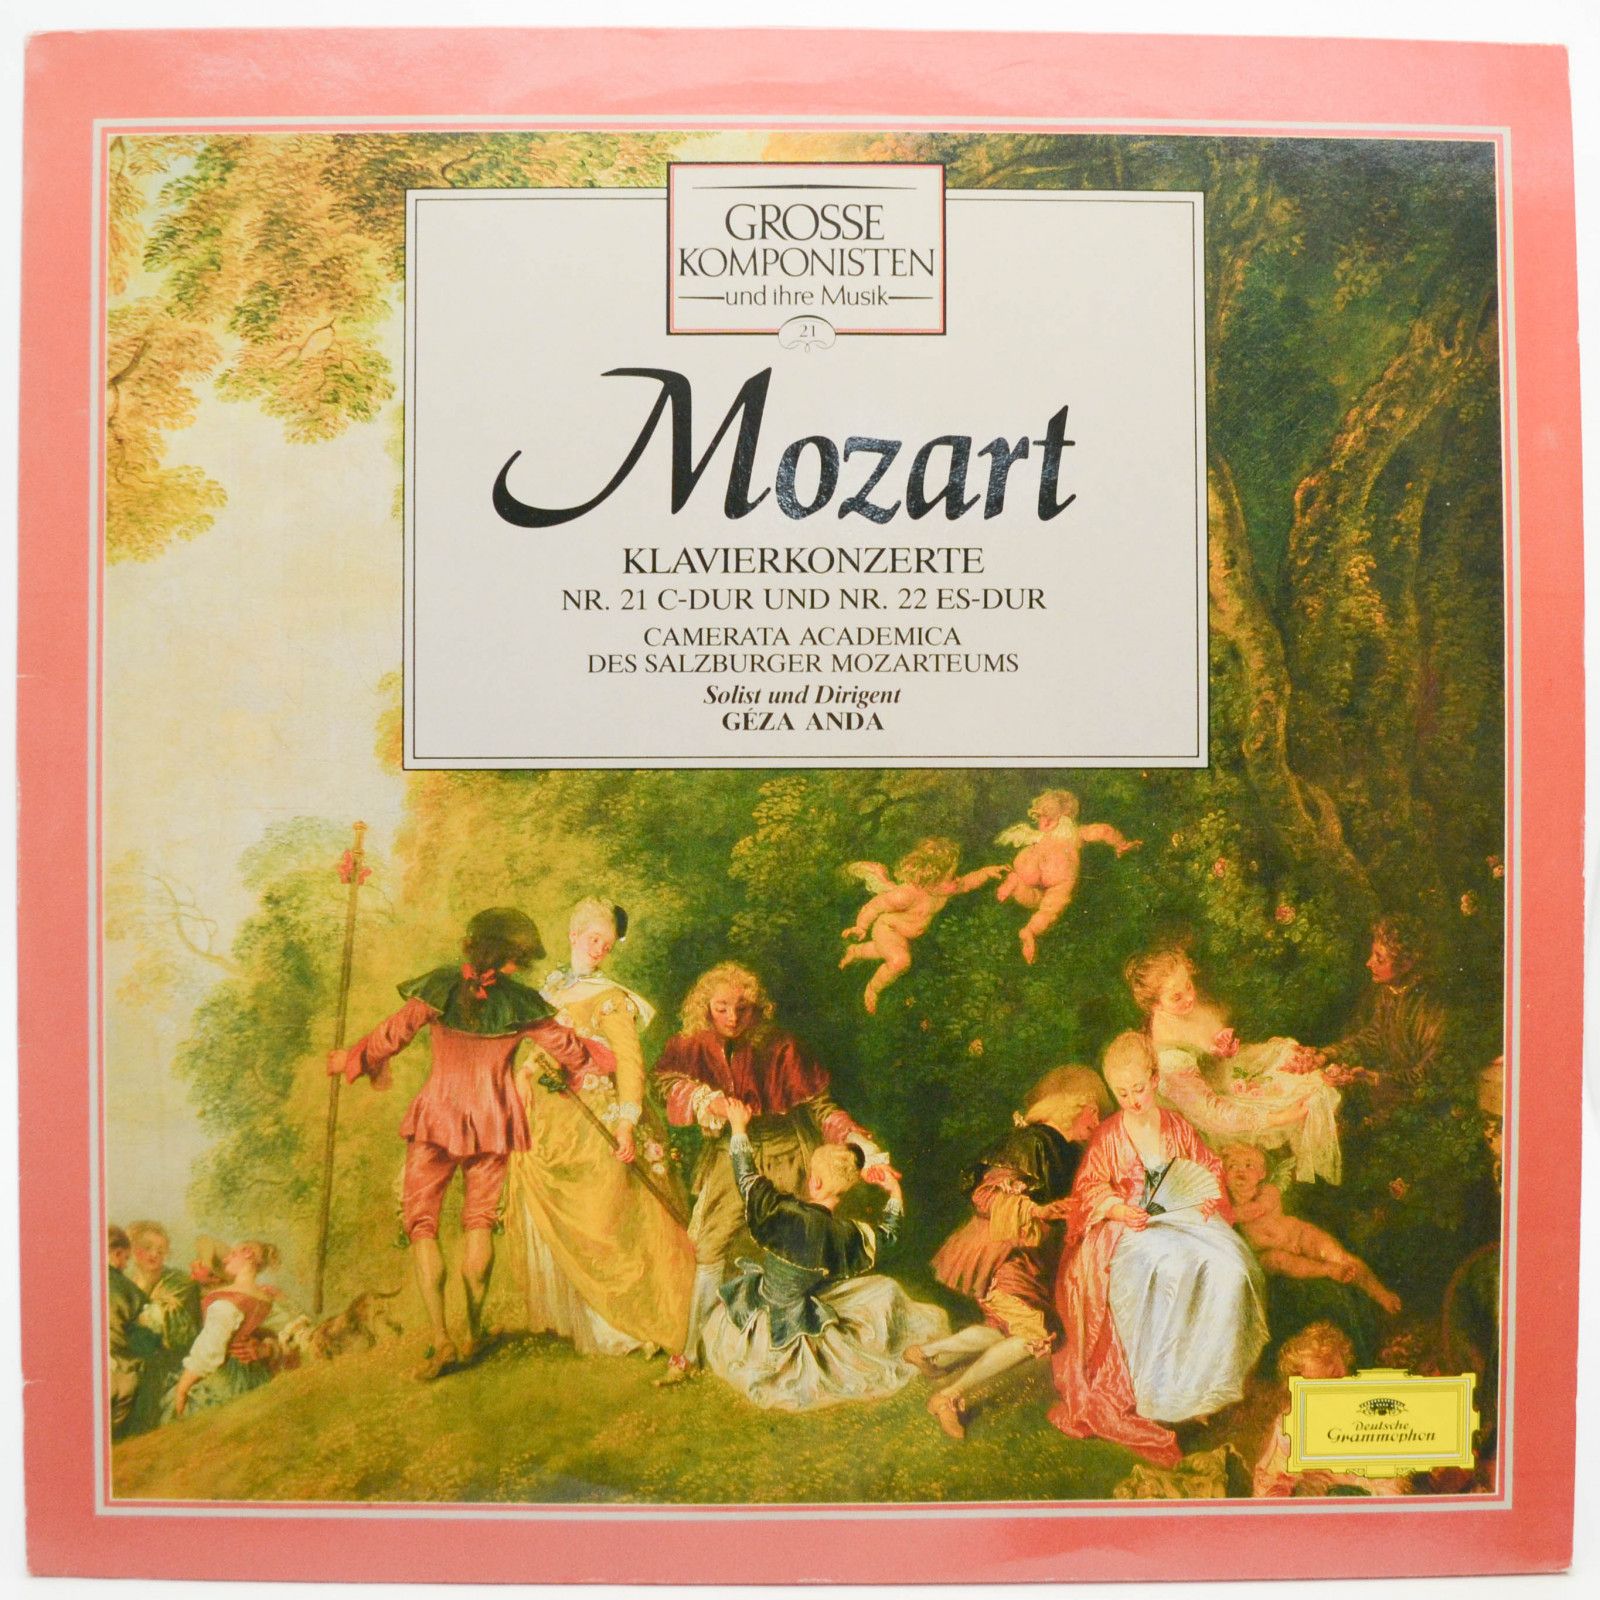 Mozart / Camerata Academica Des Salzburger Mozarteums / Géza Anda — Klavierkonzerte Nr. 21 C-Dur Und Nr. 22 Es-Dur, 1978